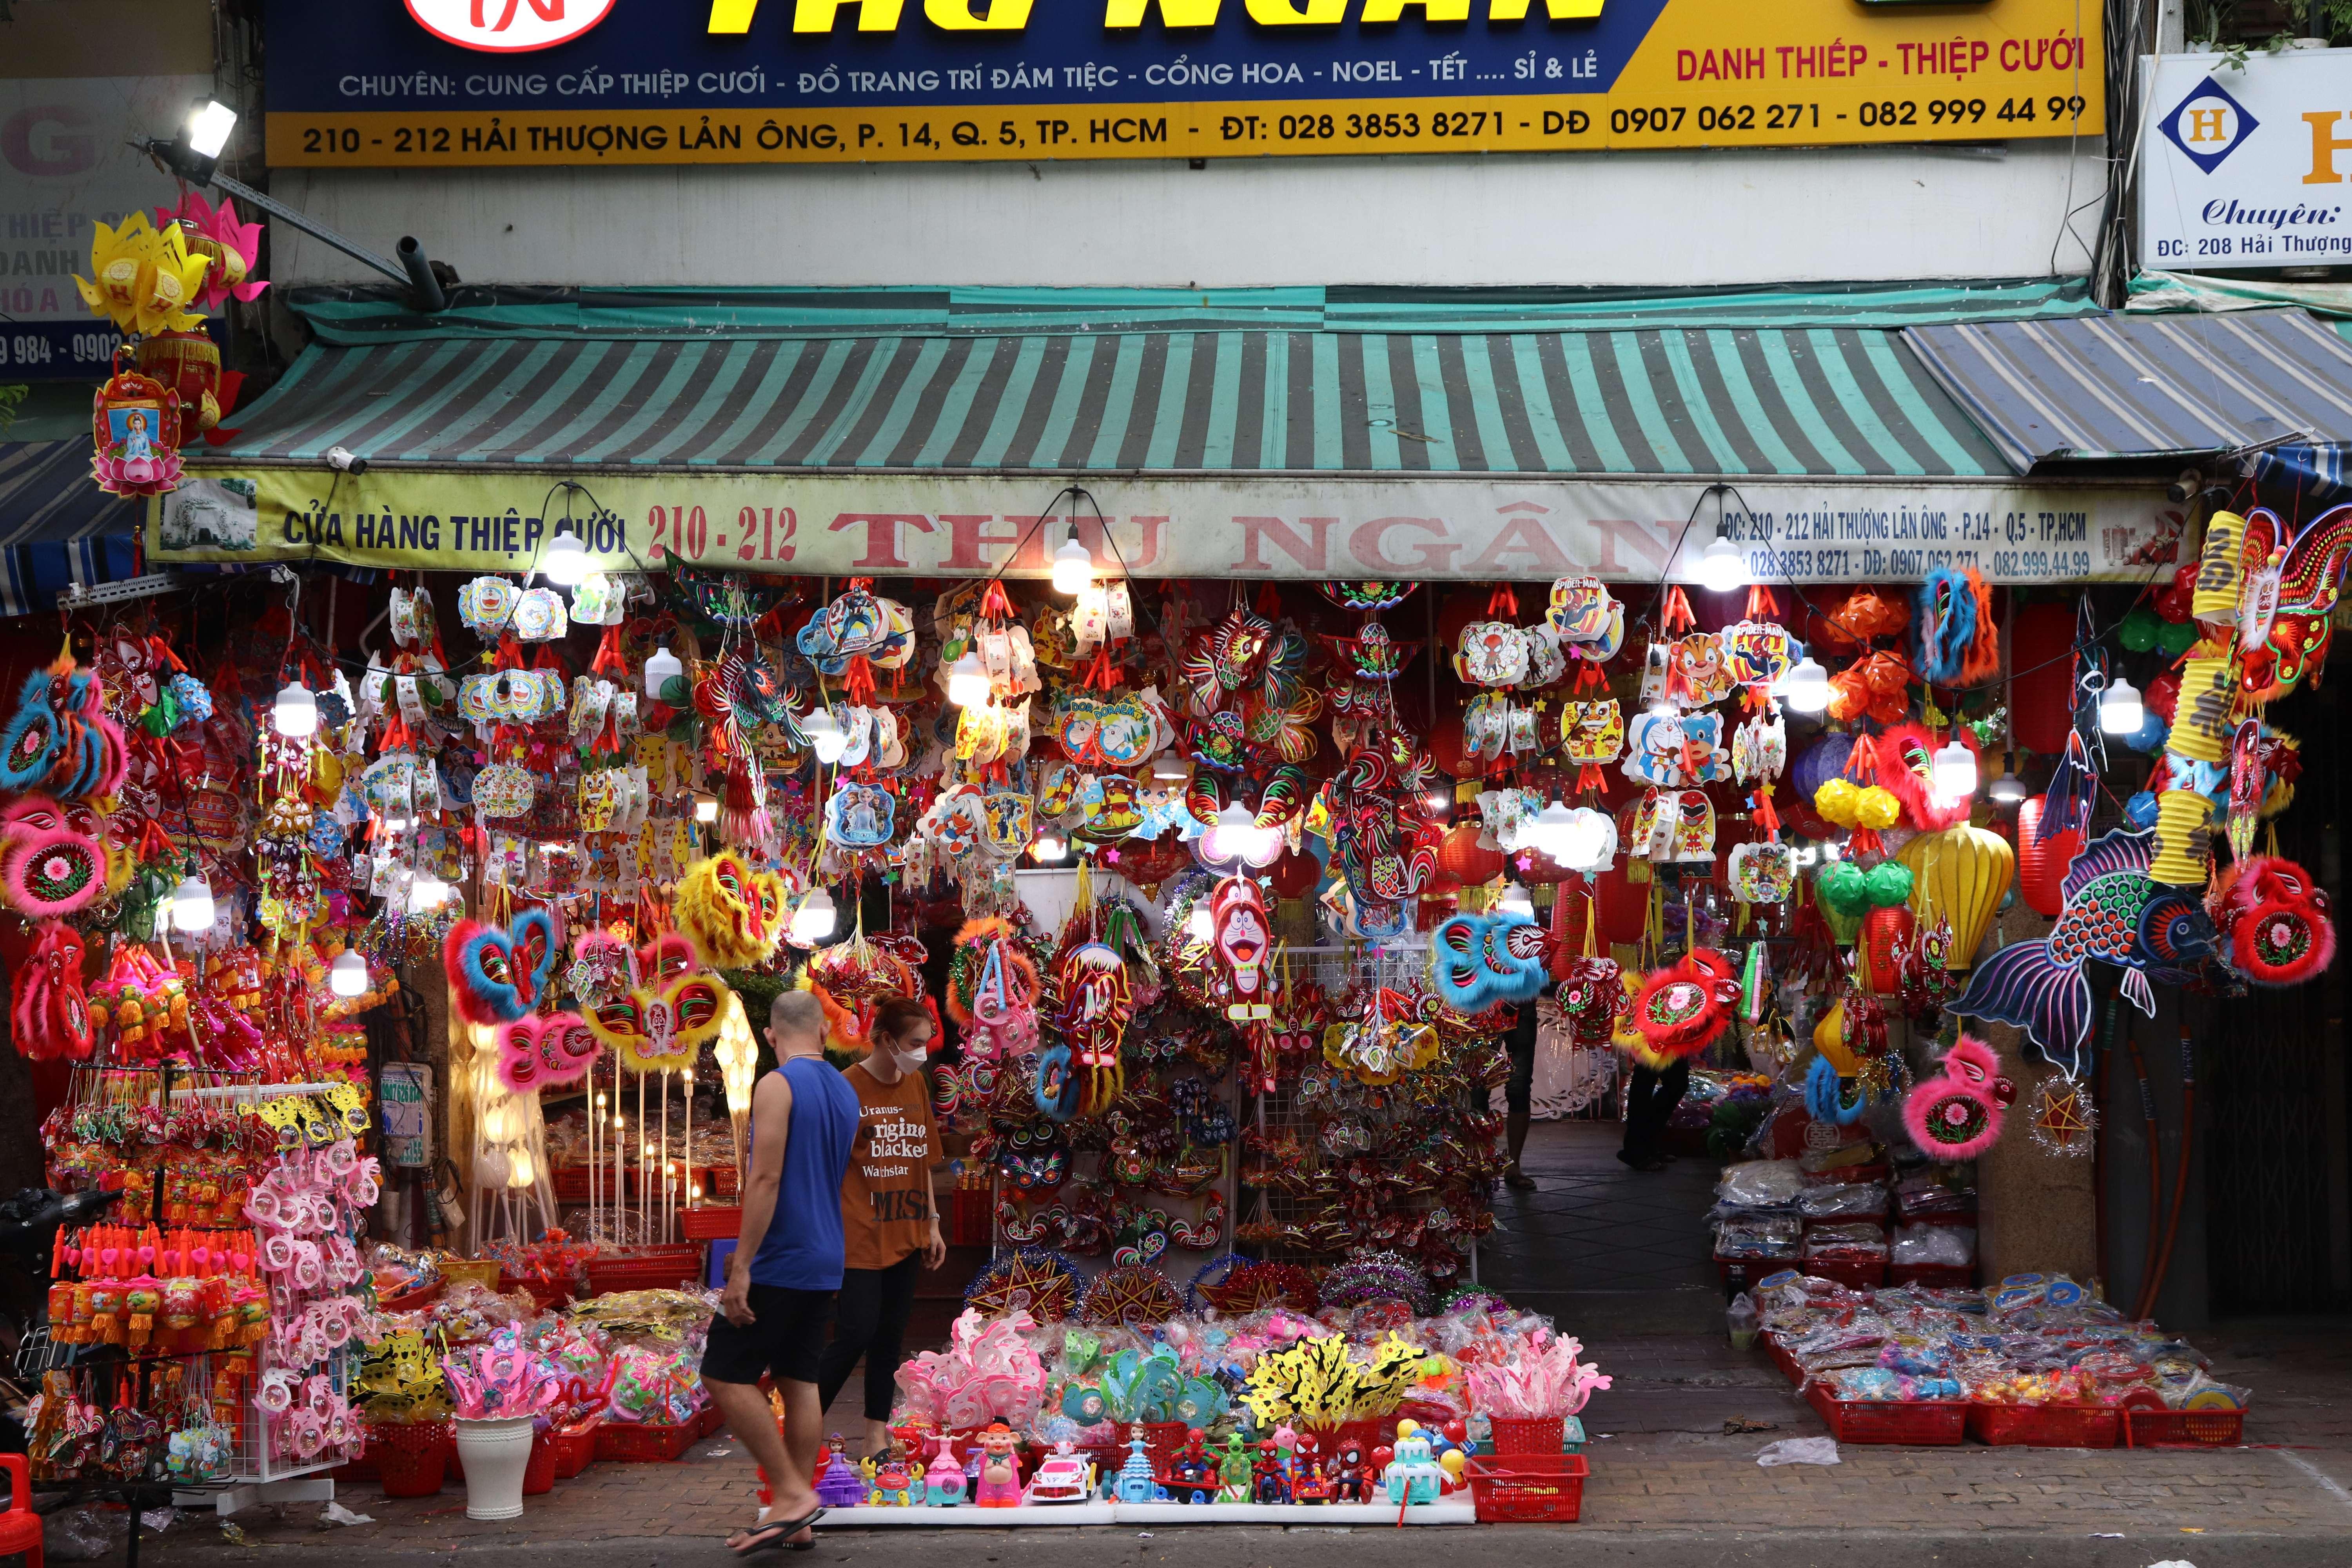 Lồng đèn Hóc Môn: Hãy khám phá nét đẹp truyền thống của Việt Nam với lồng đèn Hóc Môn, sản phẩm thủ công được làm từ chất liệu giấy mỹ thuật cao cấp. Những lồng đèn đẹp được trang trí các hoa văn, hình ảnh lục bình, cánh én, trăng sao, tạo nên không gian ấm áp, lãng mạn và tinh tế. Hãy đến Hóc Môn để tận hưởng vẻ đẹp của những lồng đèn độc đáo này.